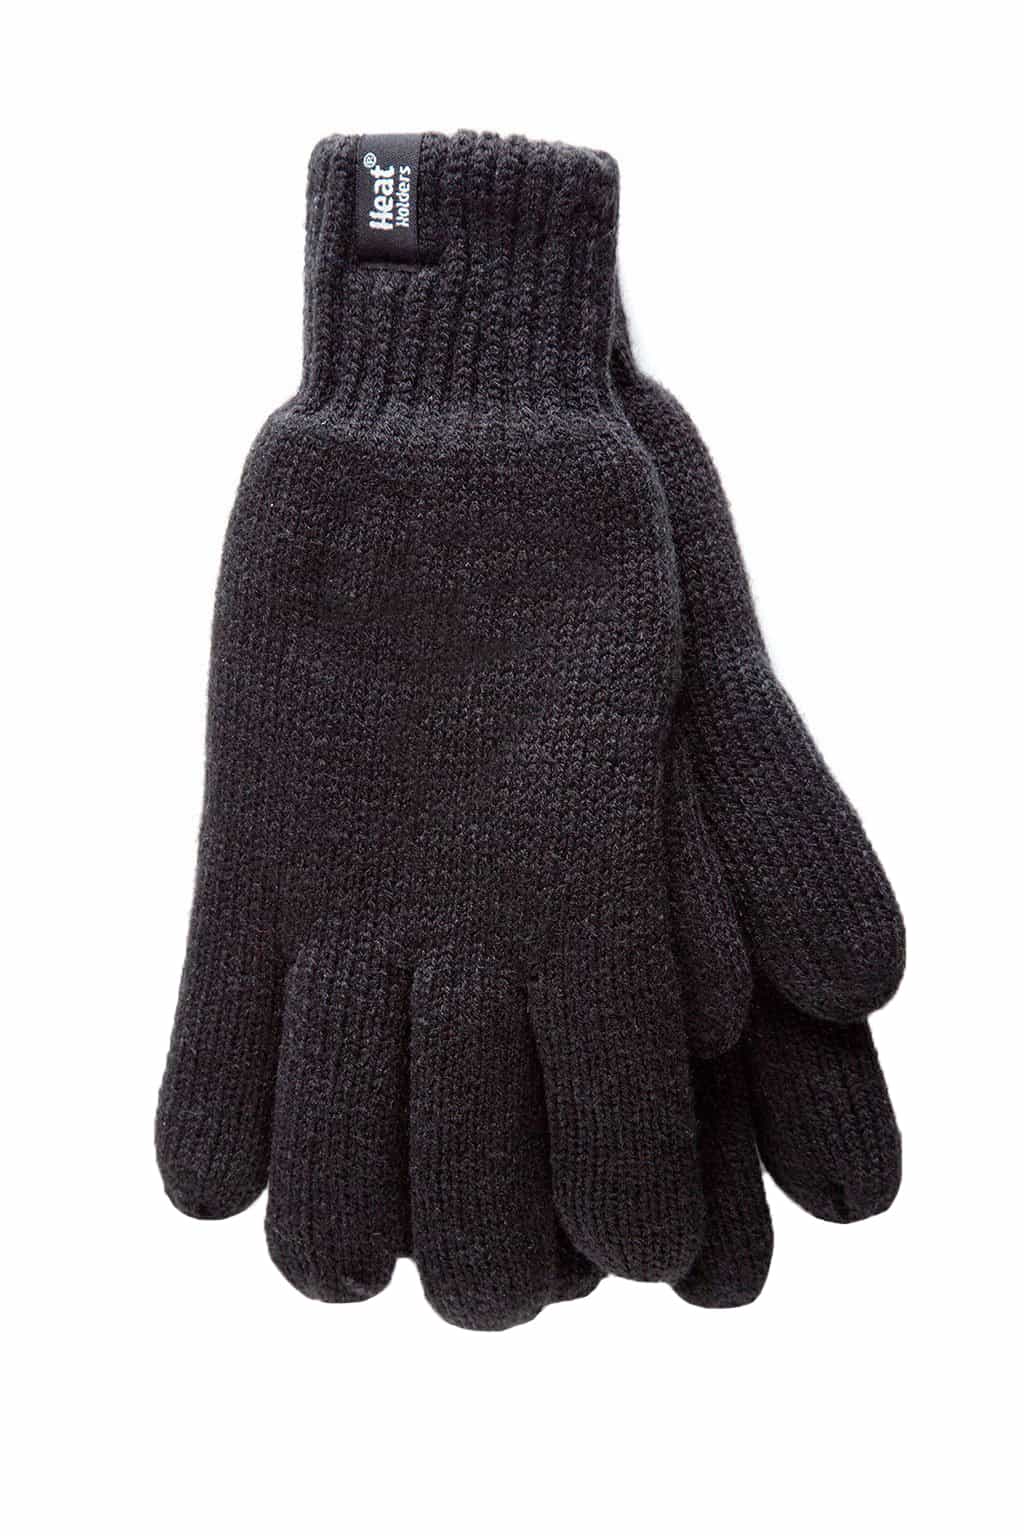 Mens gloves black